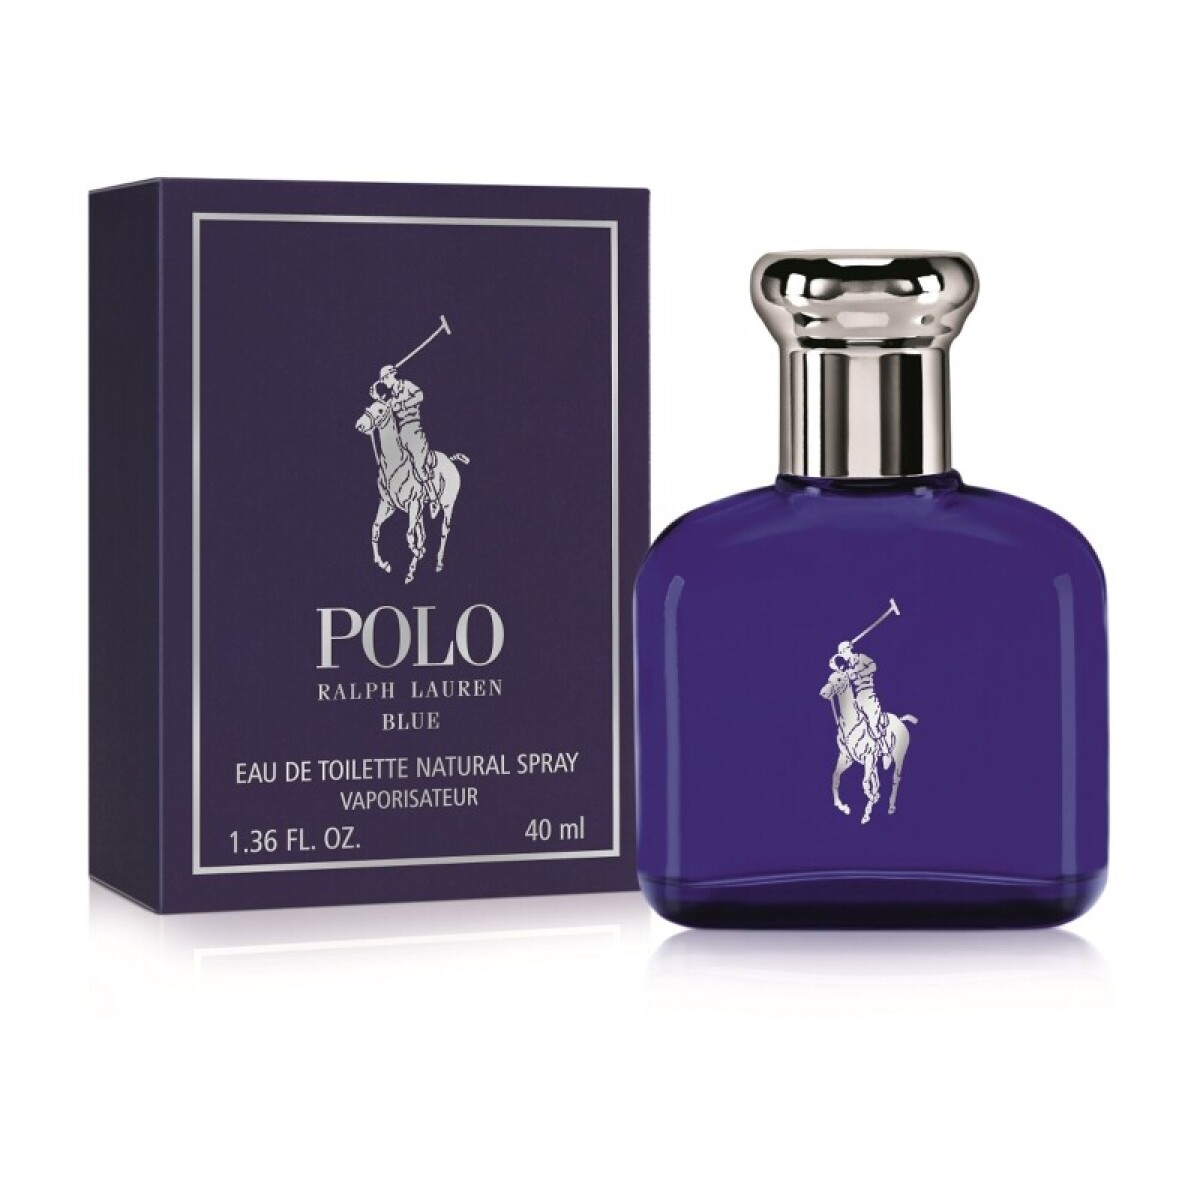 Ralph Lauren Perfume Polo Blue EDT 40 ml - EDICIÓN LIMITADA 